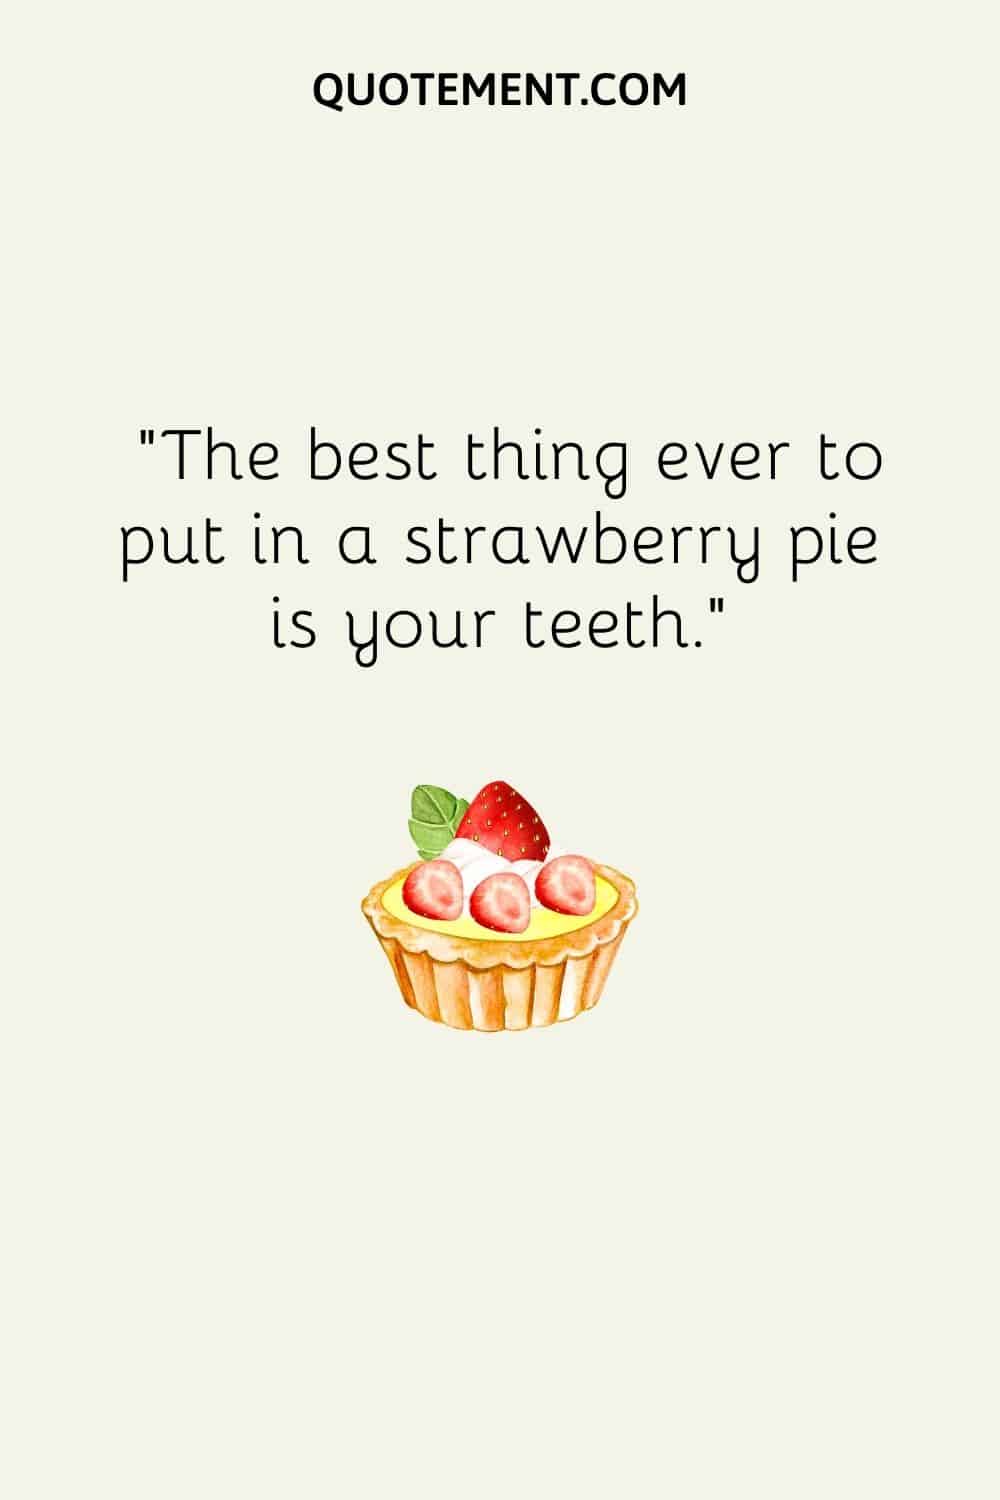 Lo mejor que puedes poner en una tarta de fresa son tus dientes